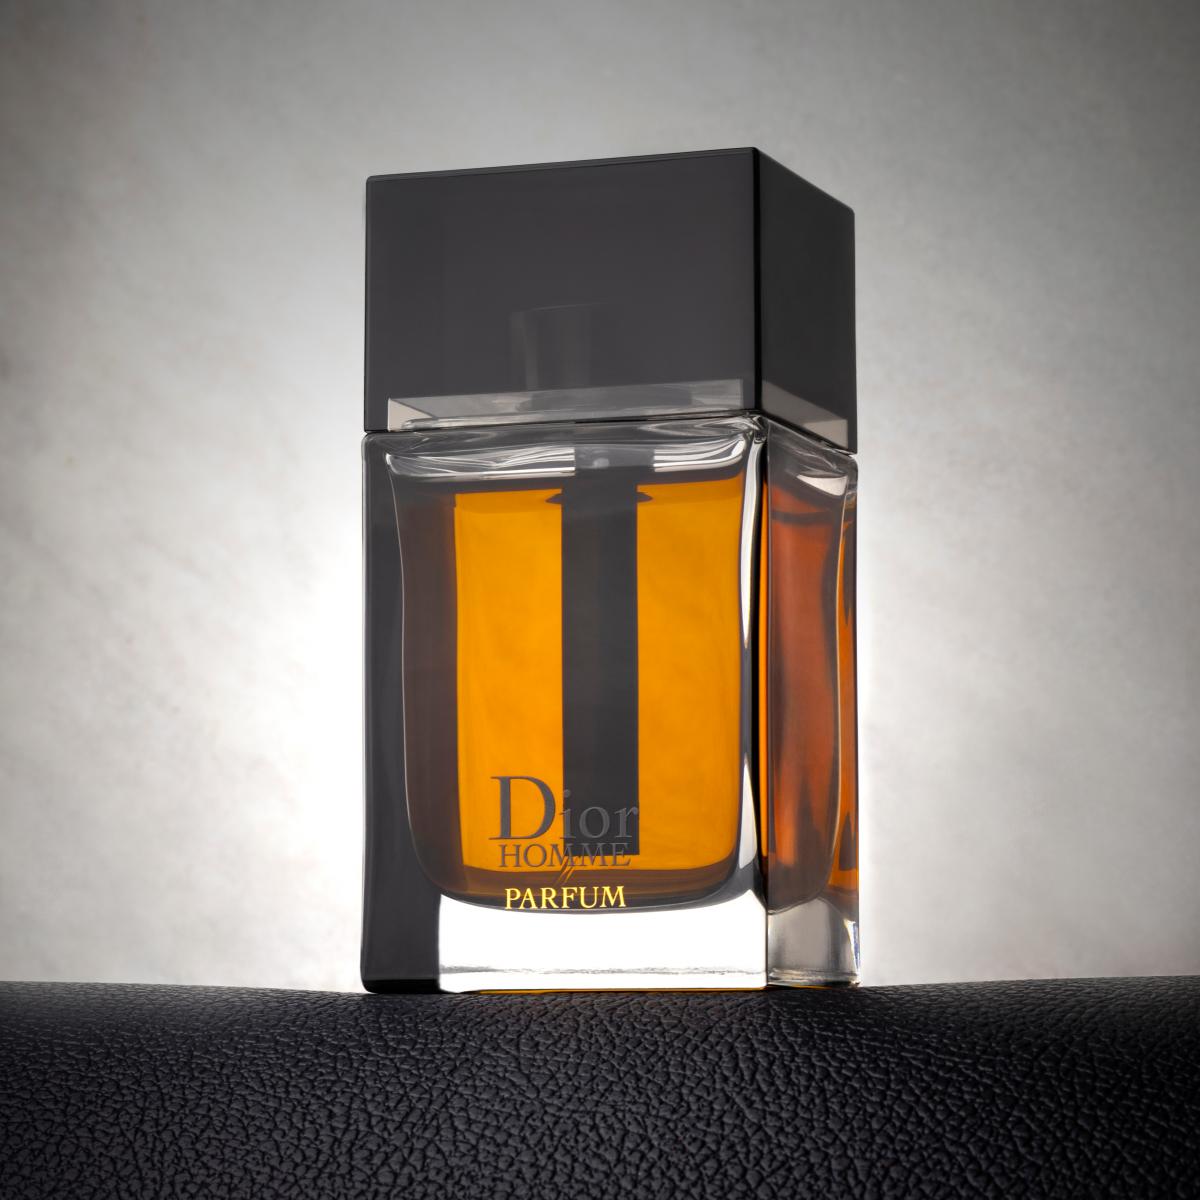 Dior Homme Parfum Christian Dior cologne - a fragrance for men 2014